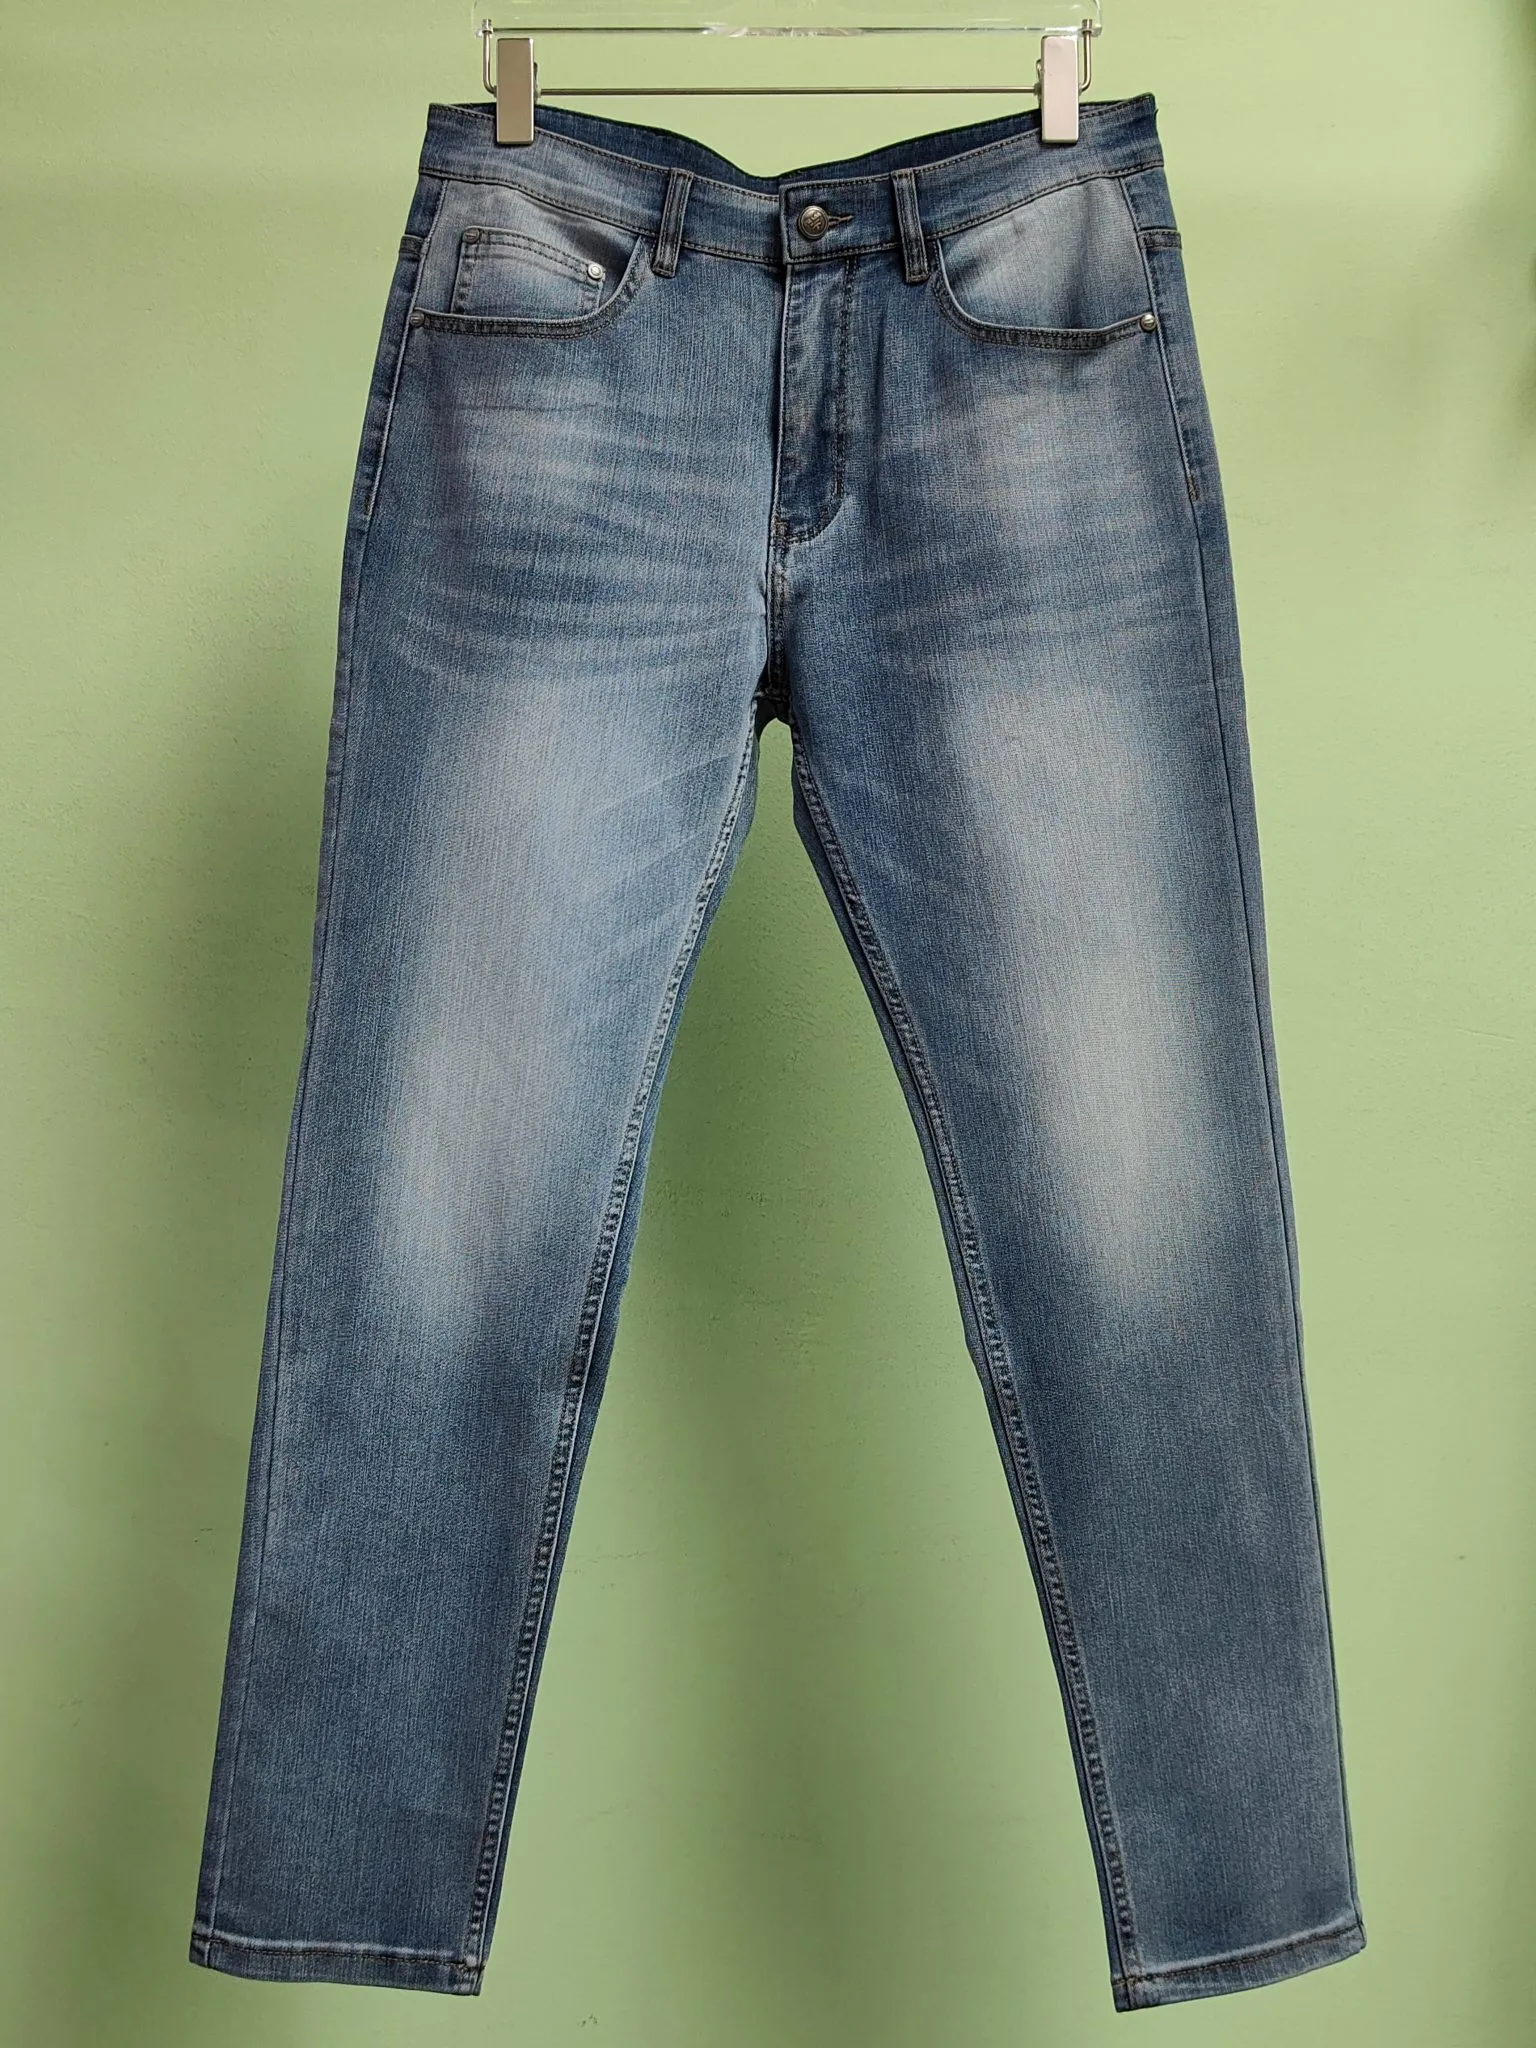 Mais novo designer masculino lindo jeans de luxo - EUA TAMANHO 28 - 36 - jeans de grife masculino de alta qualidade